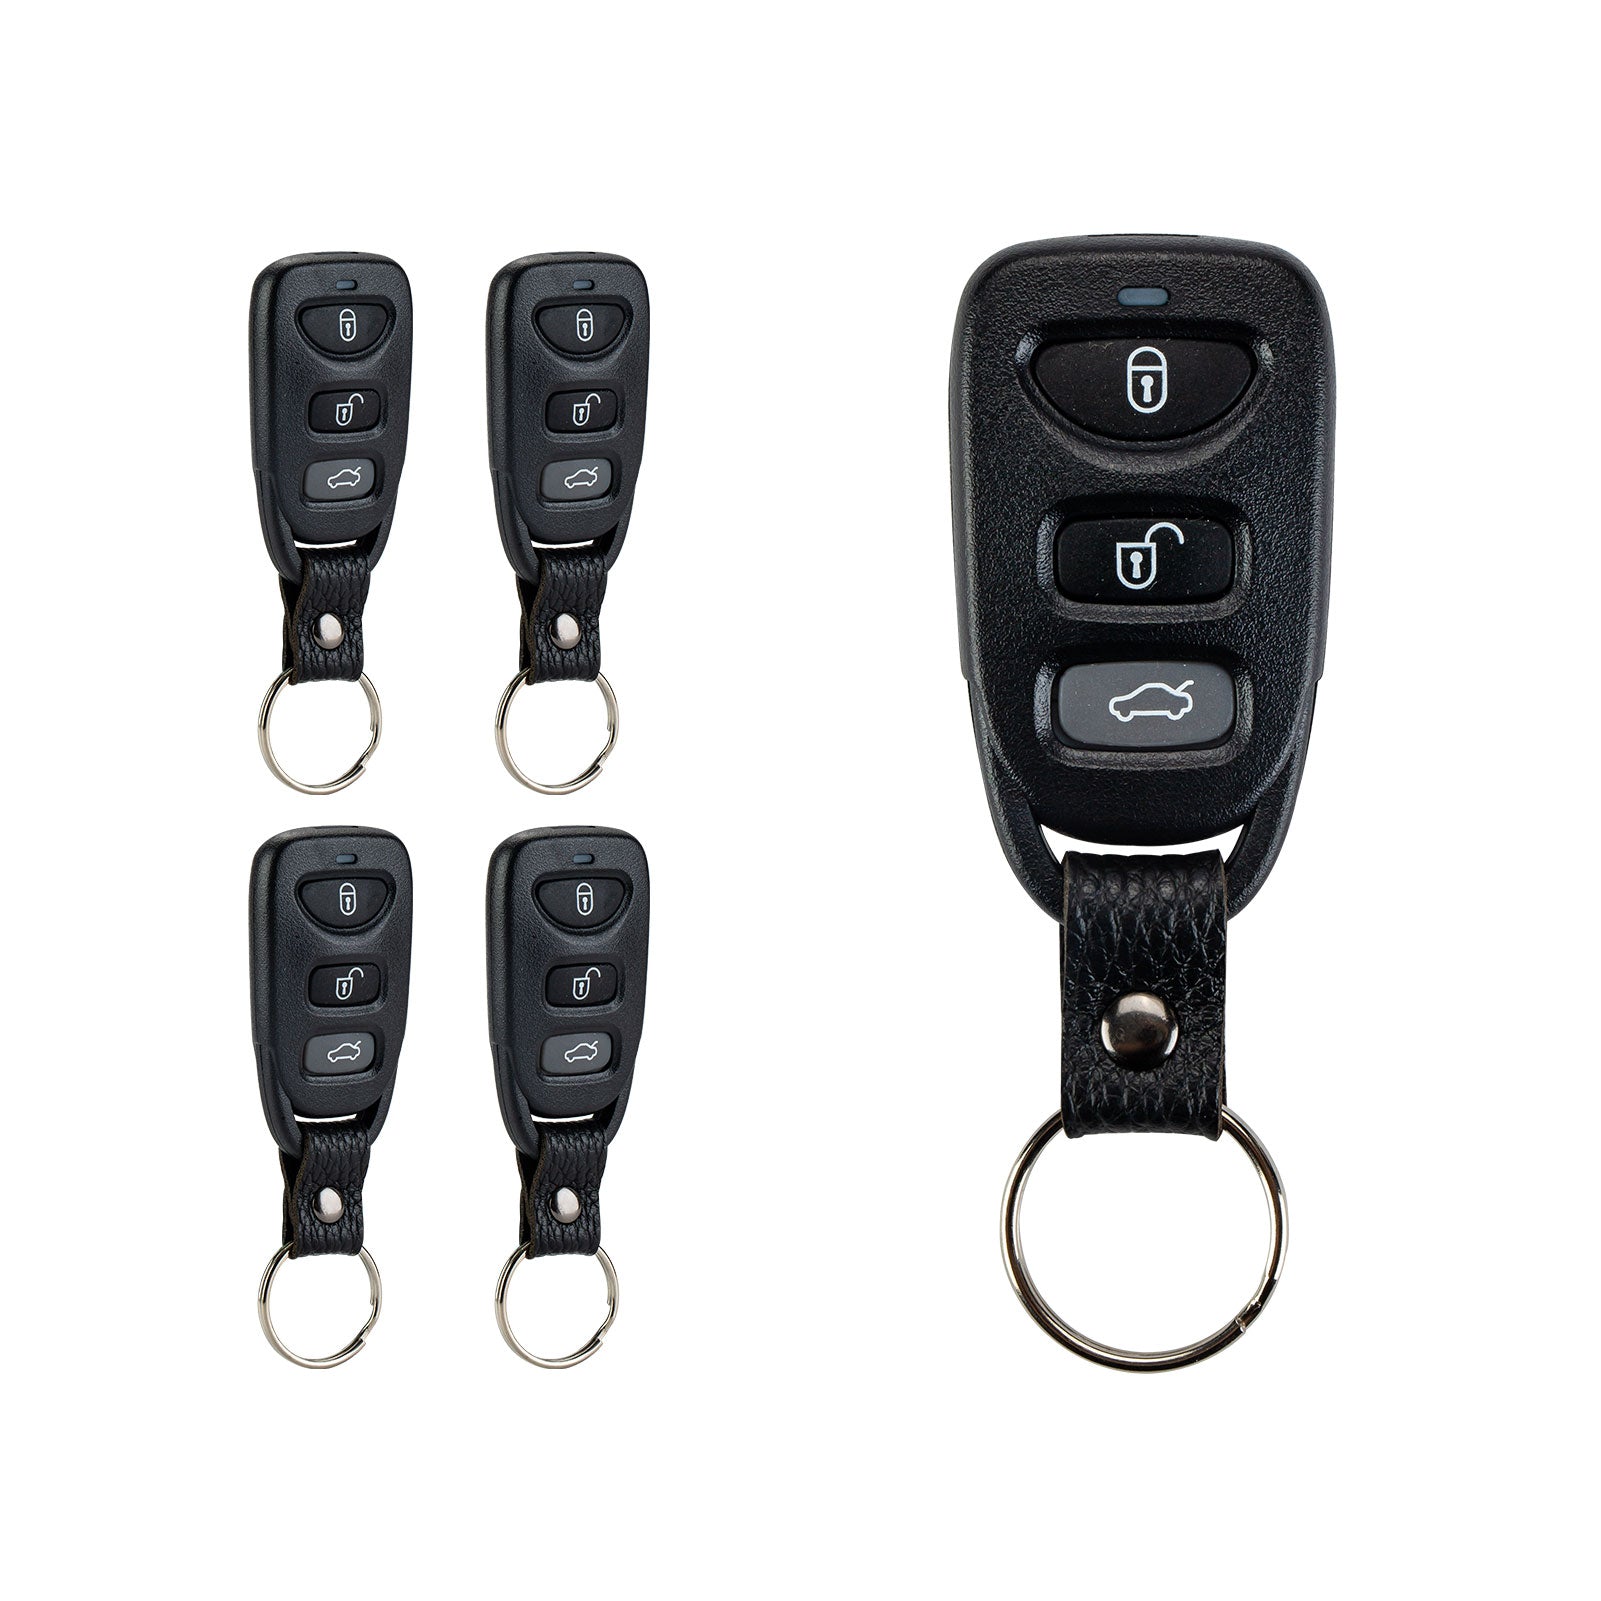 Keyless Entry Remote Control Car Key Fob for 2013, 2014, 2015, 2016, 2017 Hyundai Elantra GT 2011-2014 Accent Remote TQ8RKE-3F03